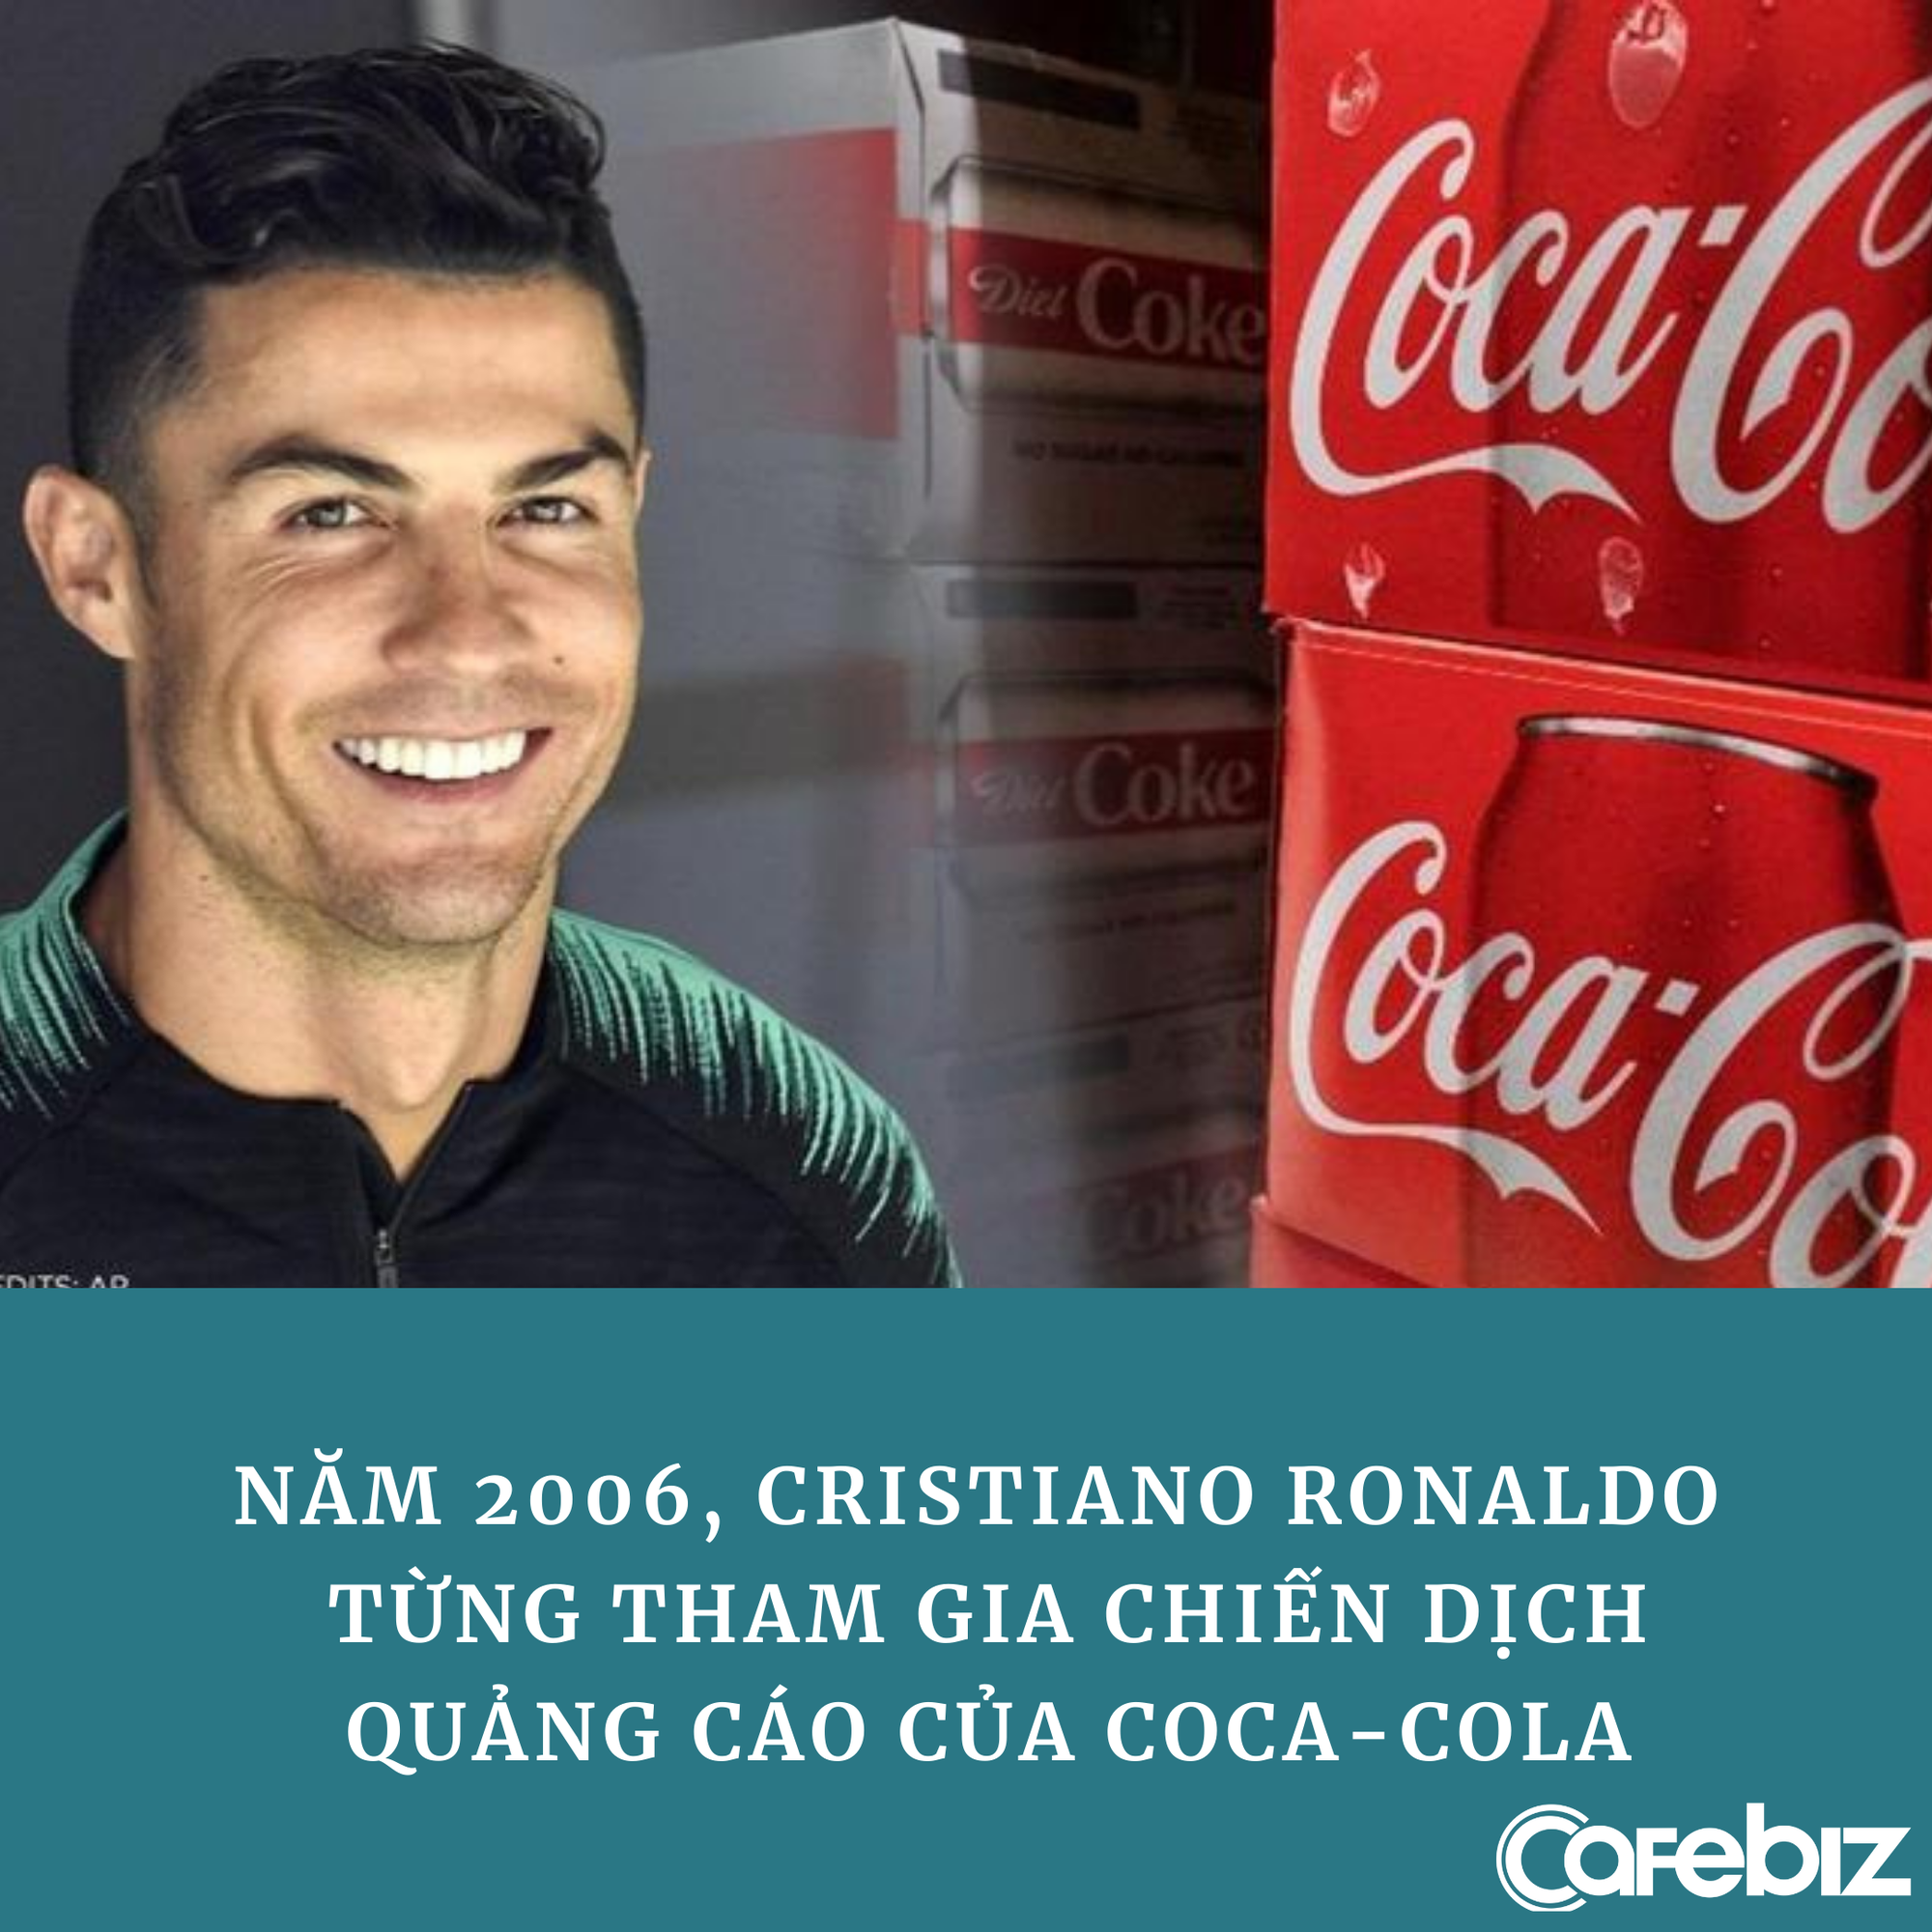 Ronaldo từng quảng cáo cho Coca Cola trước khi thẳng tay ‘dẹp’ 2 chai nước ngọt, khiến hãng mất 4 tỷ USD - Ảnh 3.